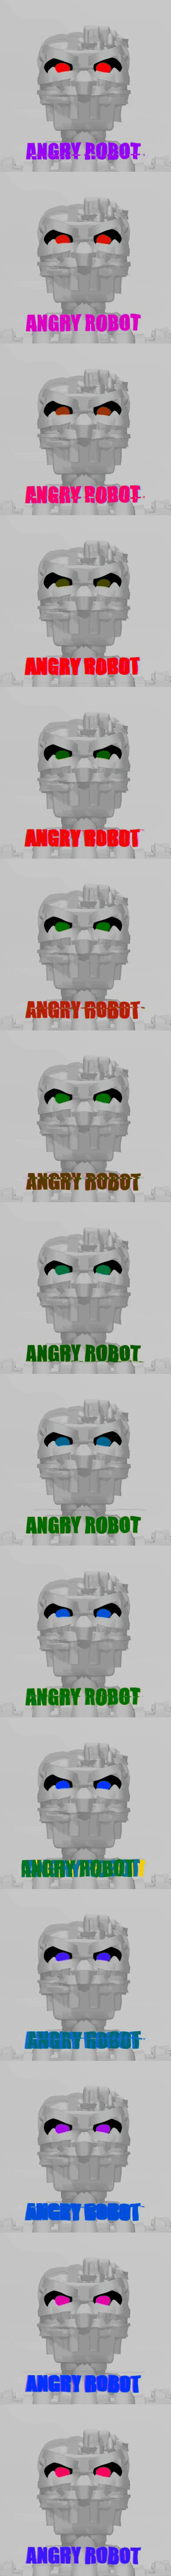 Angry Robot Ripples